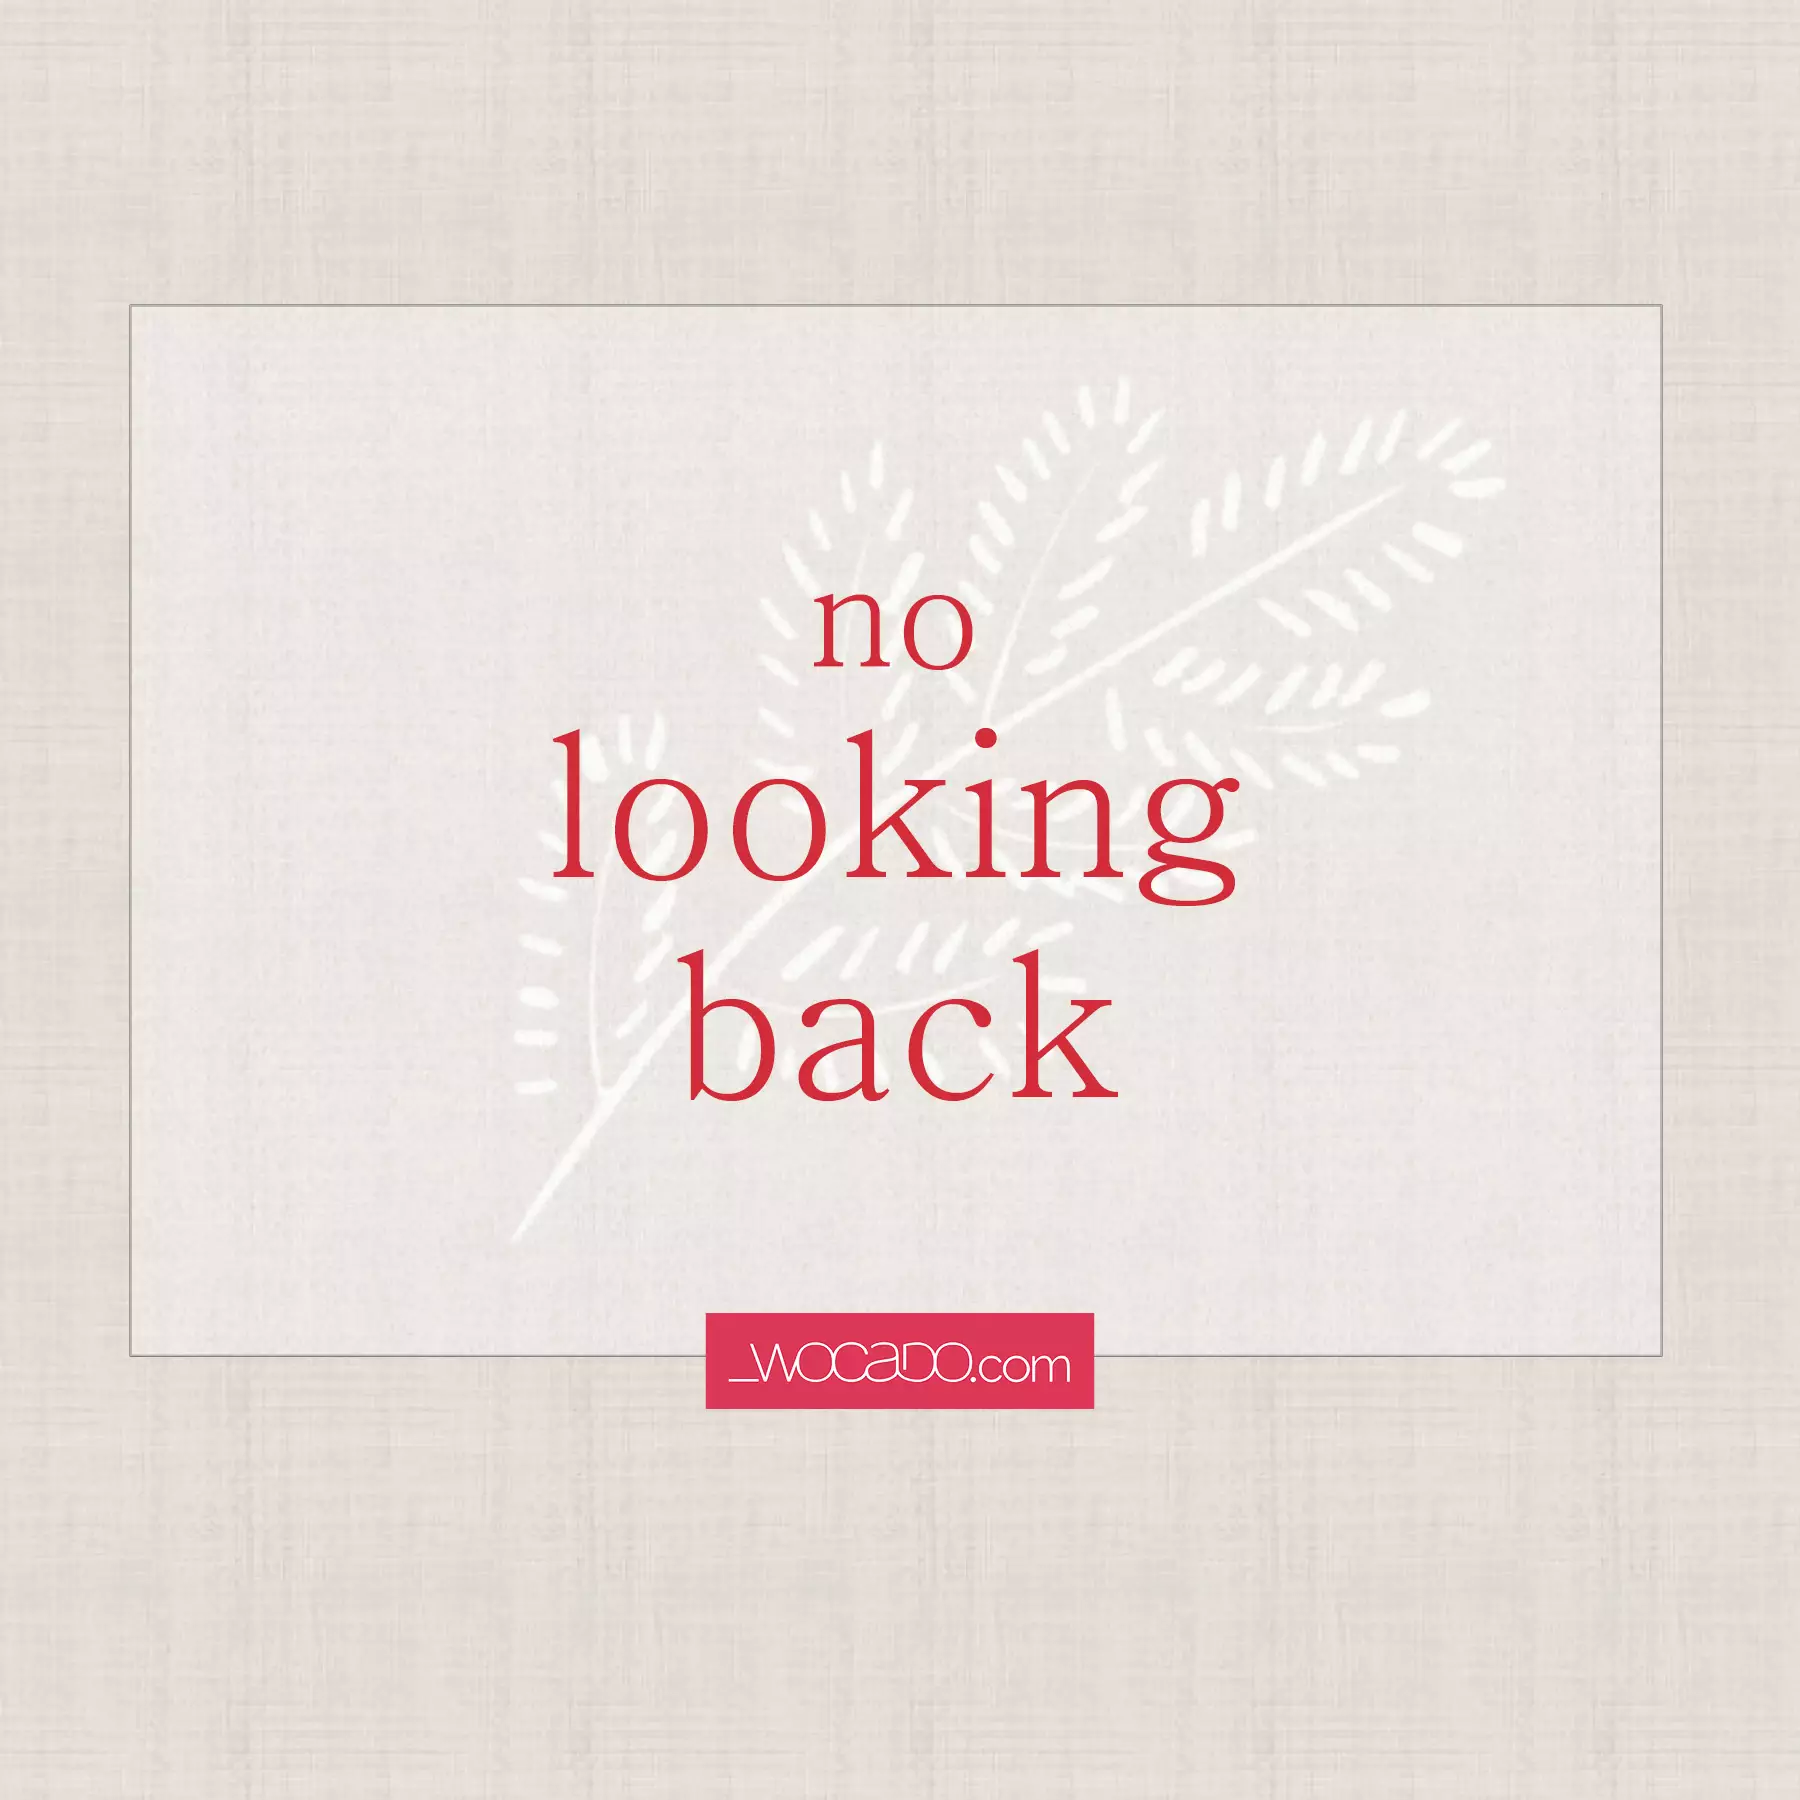 No Looking Back - video by WOCADO